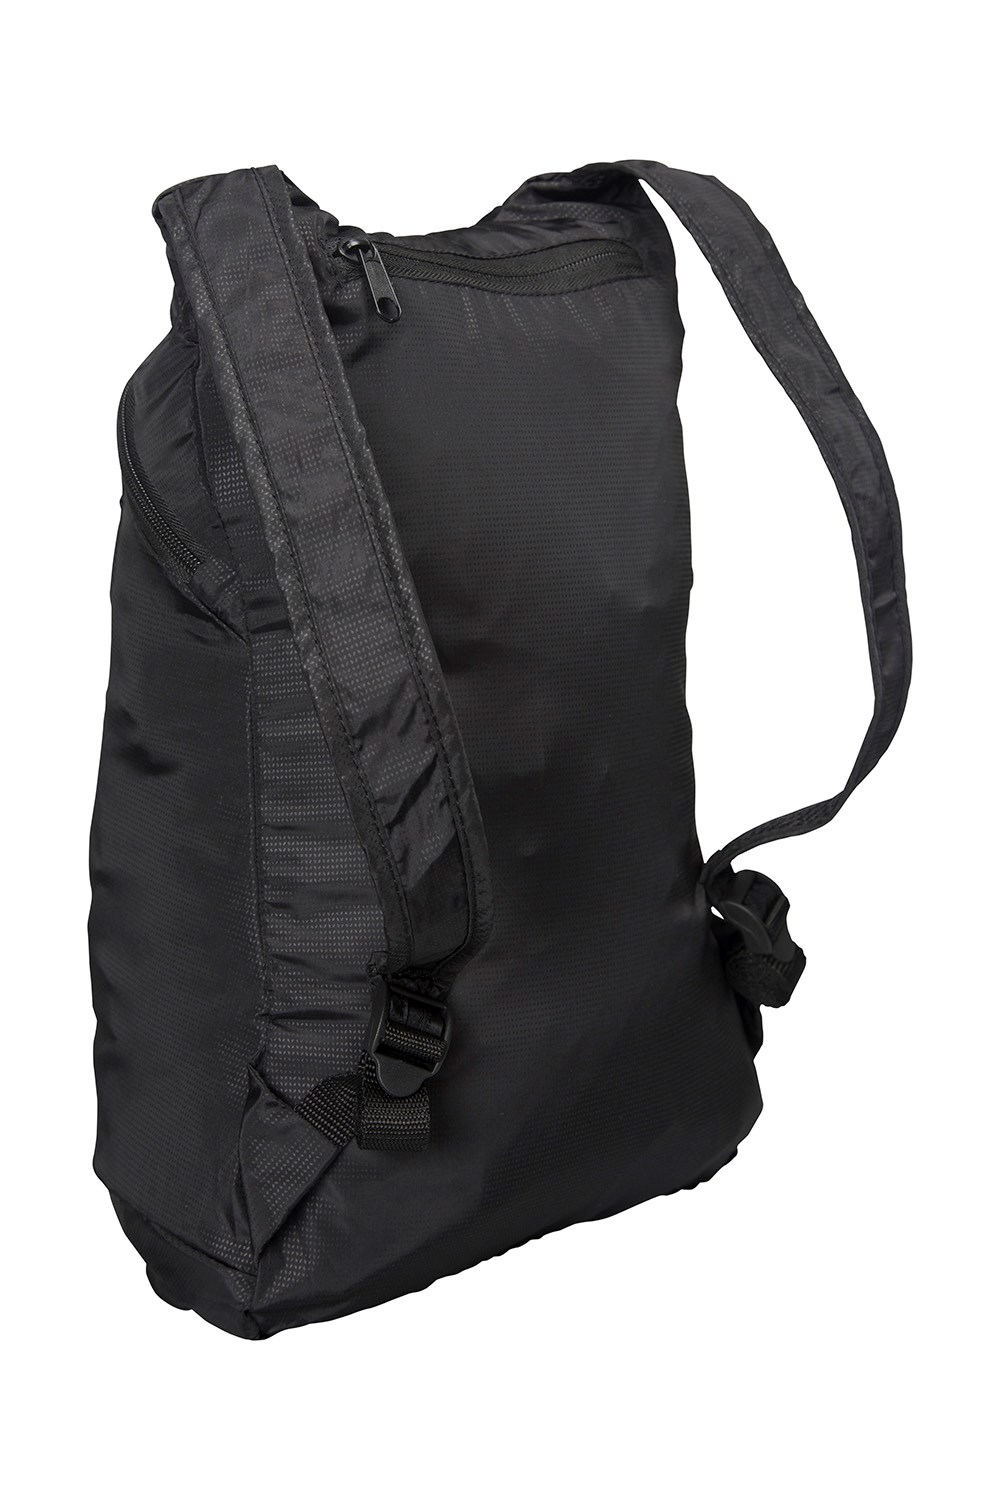 Mountain Warehouse Packaway Backpack Waterproof Travel Rucksack 